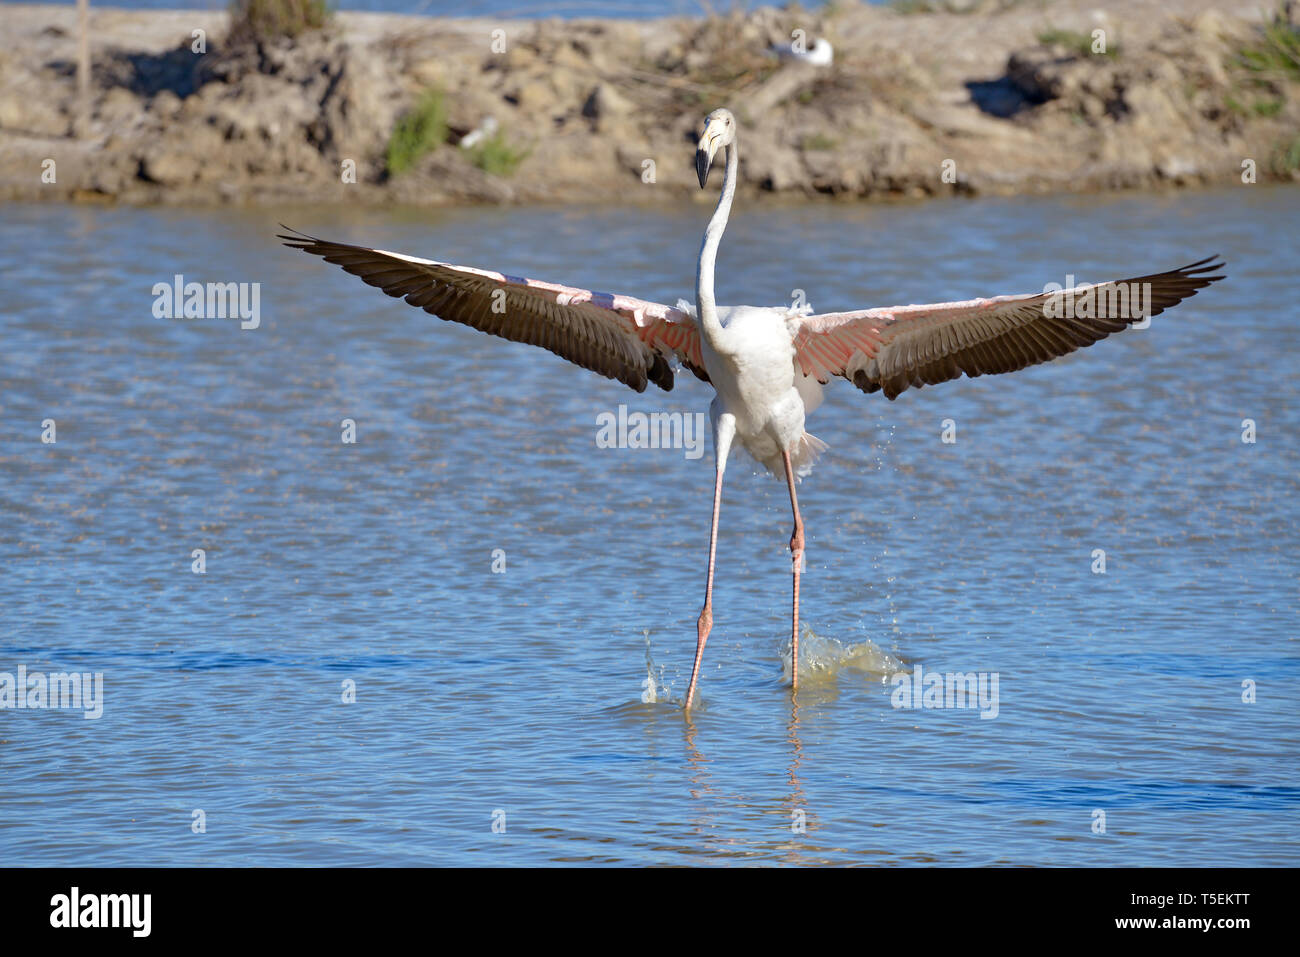 Flamingo ailes déployées dans l'eau (Phoenicopterus ruber) vu de face, dans la Camargue est une région naturelle située au sud d'Arles, France Banque D'Images